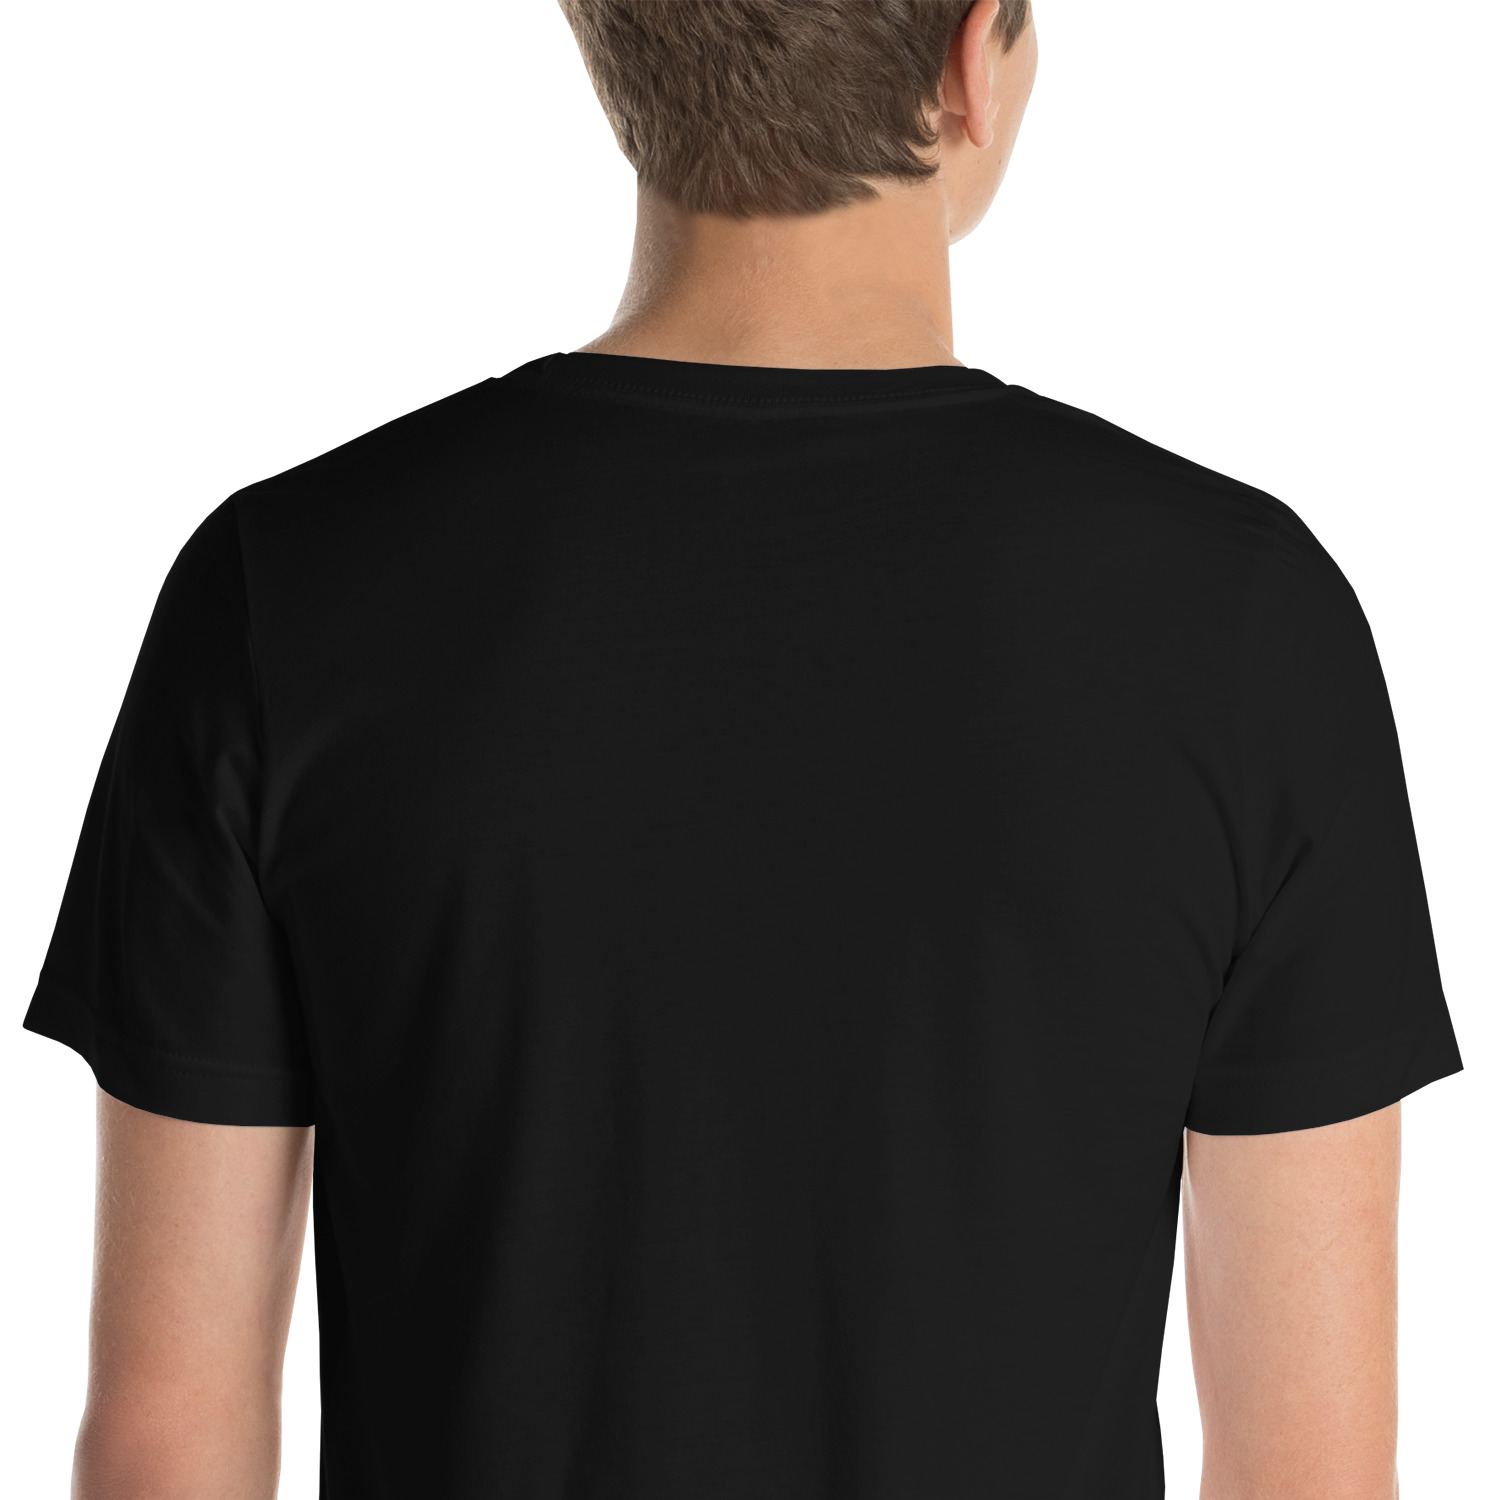 unisex-staple-t-shirt-black-zoomed-in-64626de0d633d.jpg